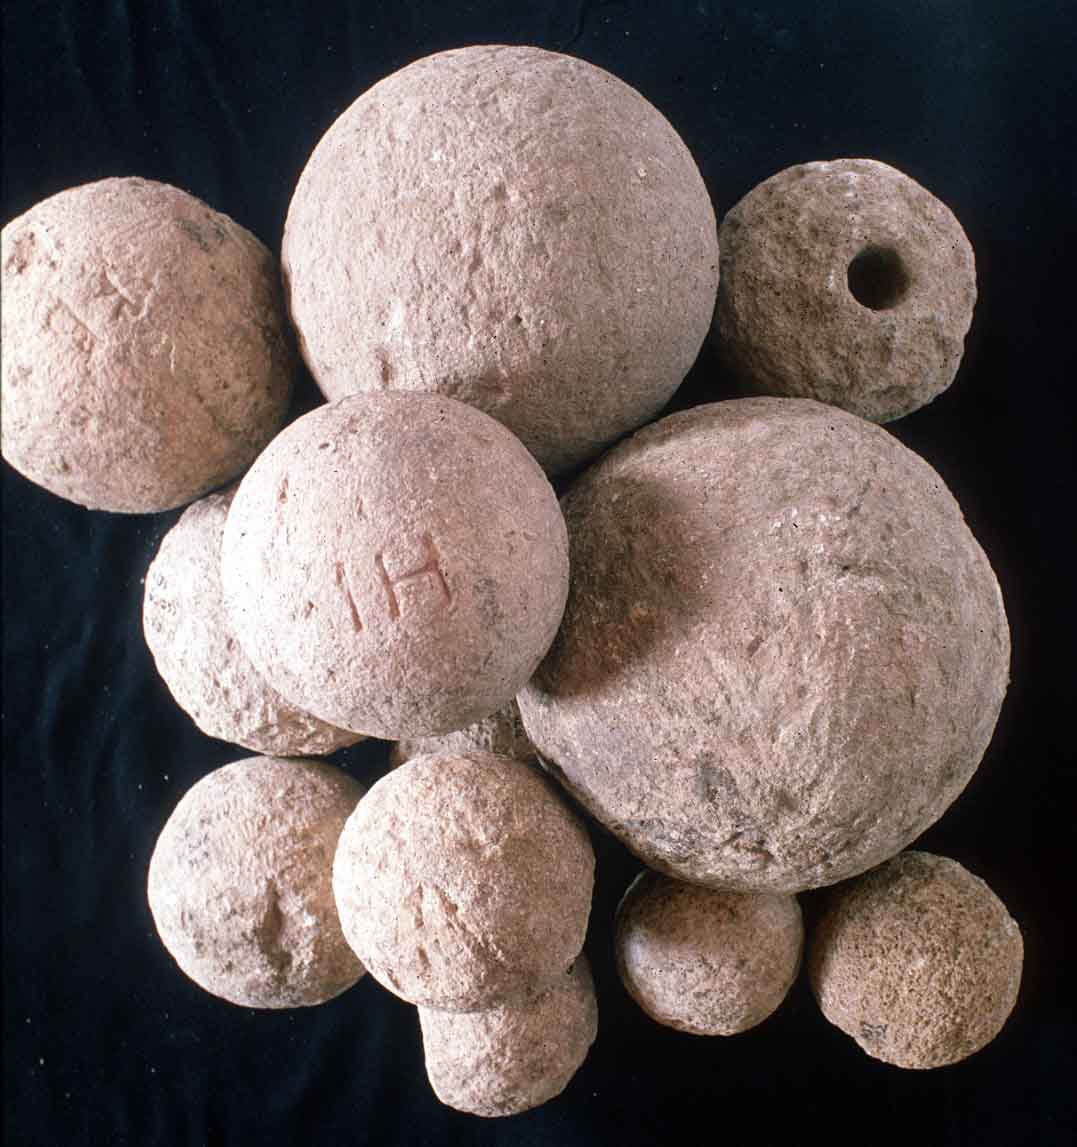 Hellenistic catapult balls